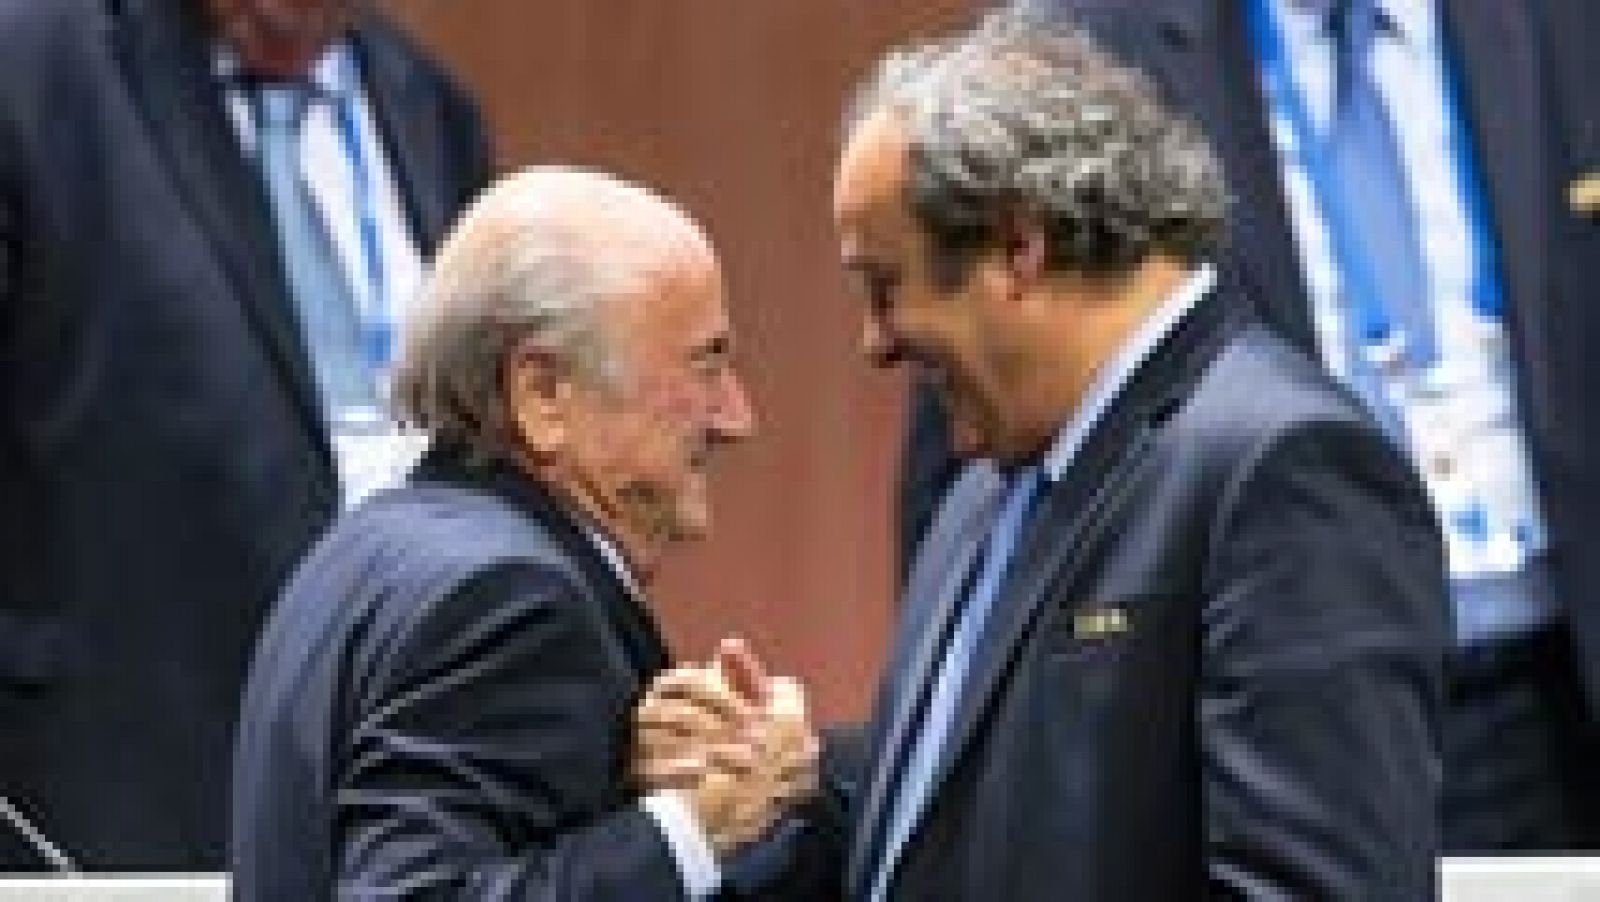 El presidente de la FIFA, Joseph Blatter, ha hablado por primera vez en una radio suiza de un "acuerdo de caballeros", respecto al controvertido pago de 1,8 millones de euros en 2011 al actual presidente de la UEFA, Michel Platini.

"Fue un contrato que tenía con Platini , un acuerdo de caballeros, no puedo dar detalles", dijo el máximo mandatario del fútbol mundial, acusado por la justicia suiza y suspendido 90 días por el Comité de Ética del mismo organismo que preside, por ese pago a Platini.